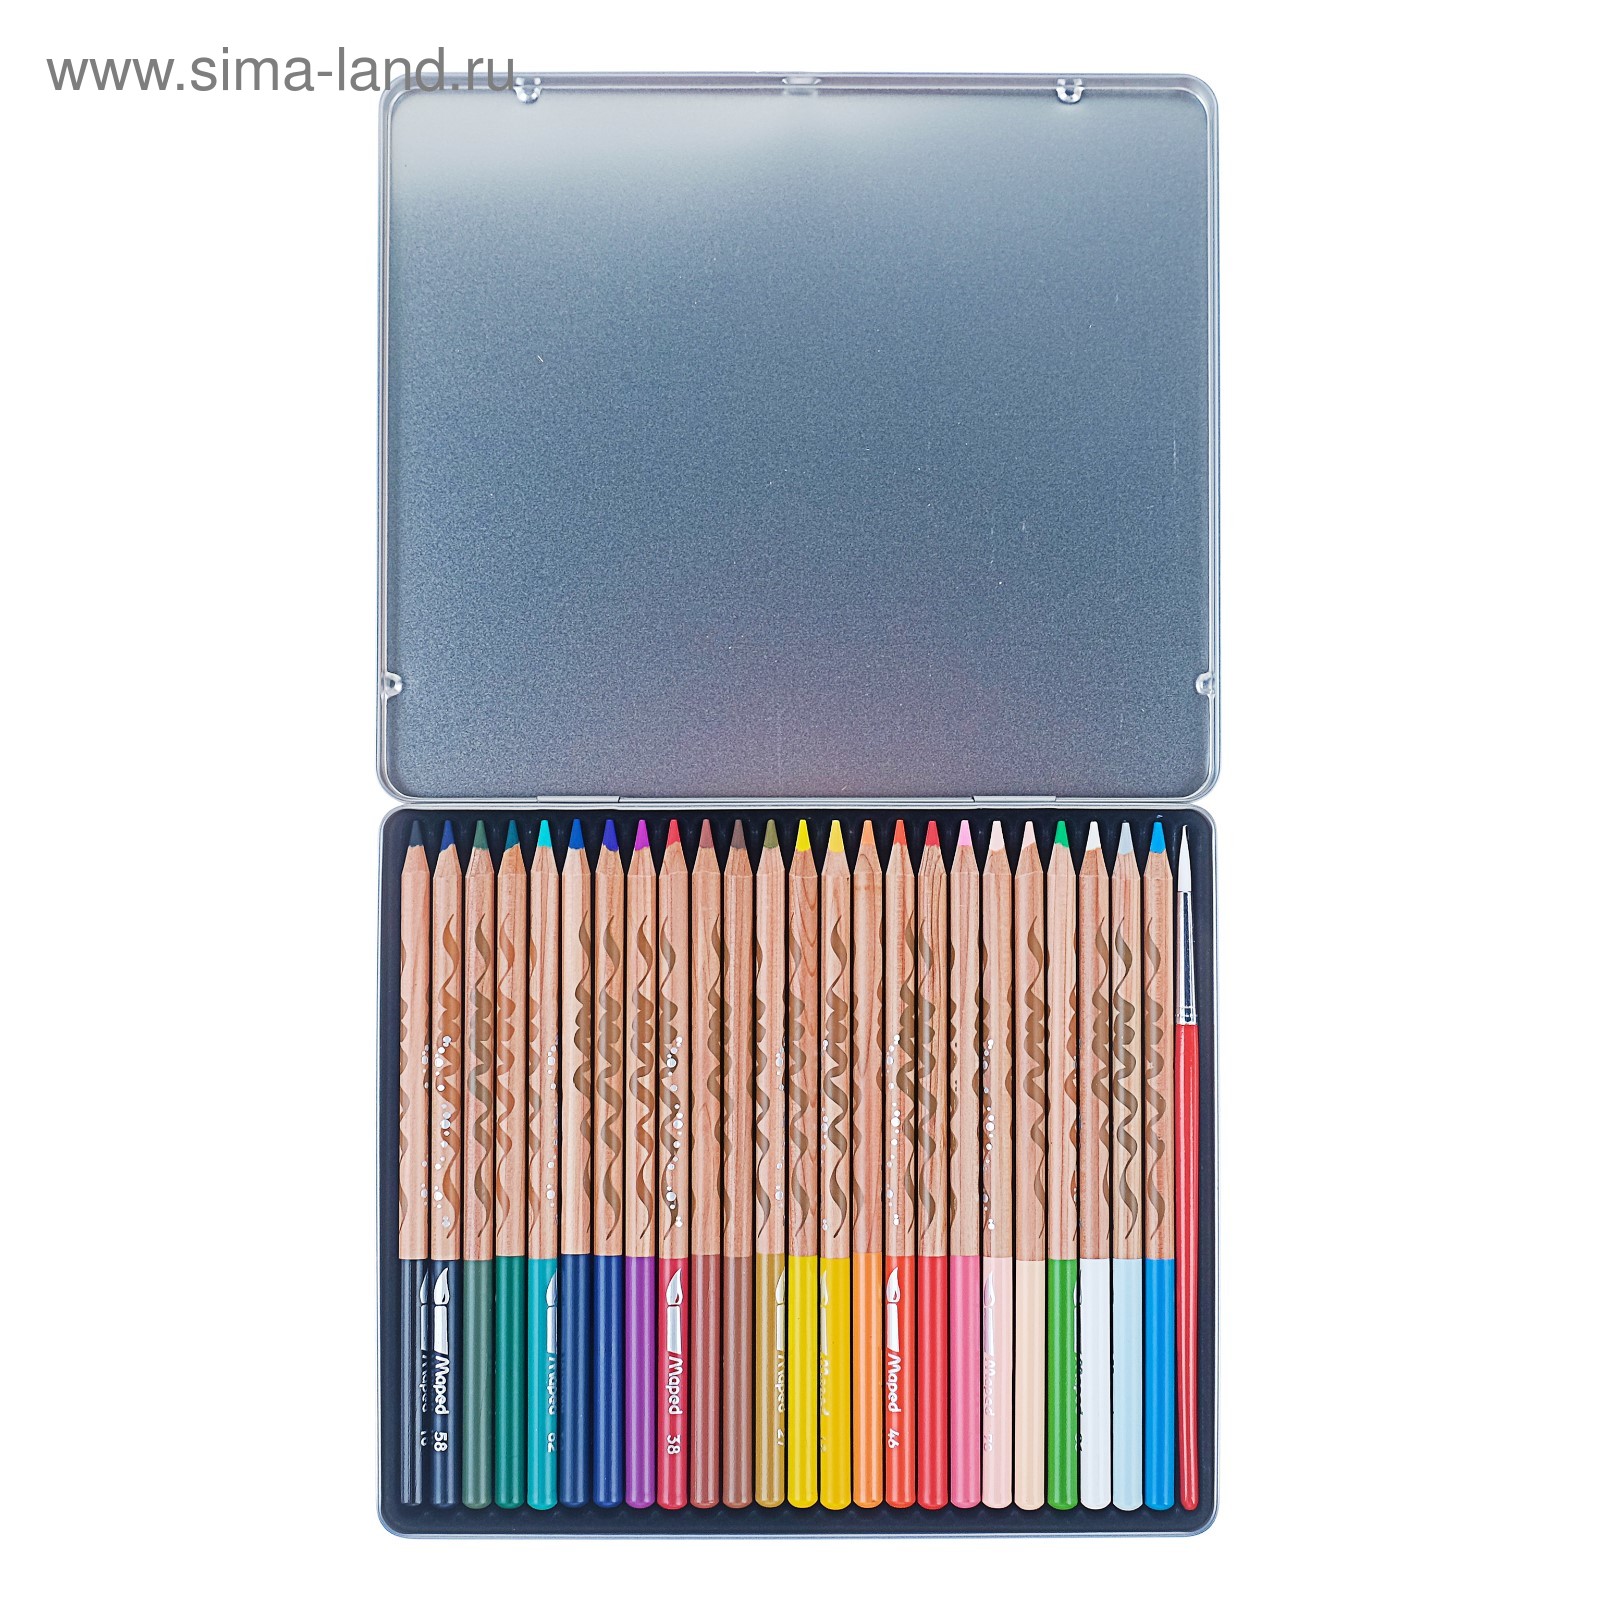 Maped карандаши 24 цвета